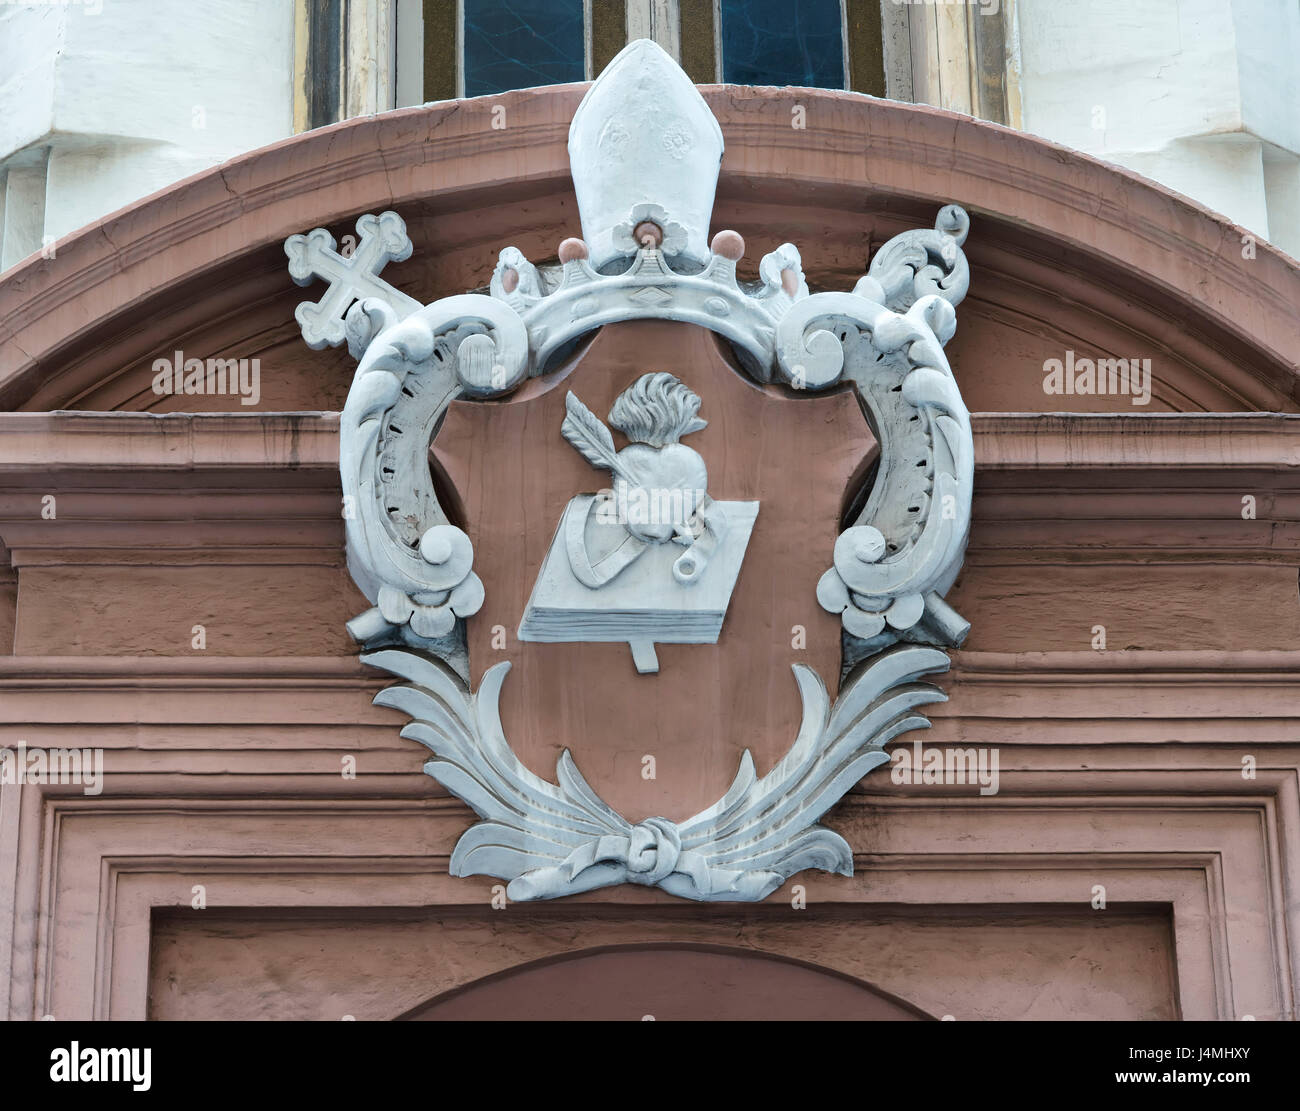 Arquitectura sacra maltés. Escultura ornamental en un arco de la puerta en la Valeta, Malta Foto de stock